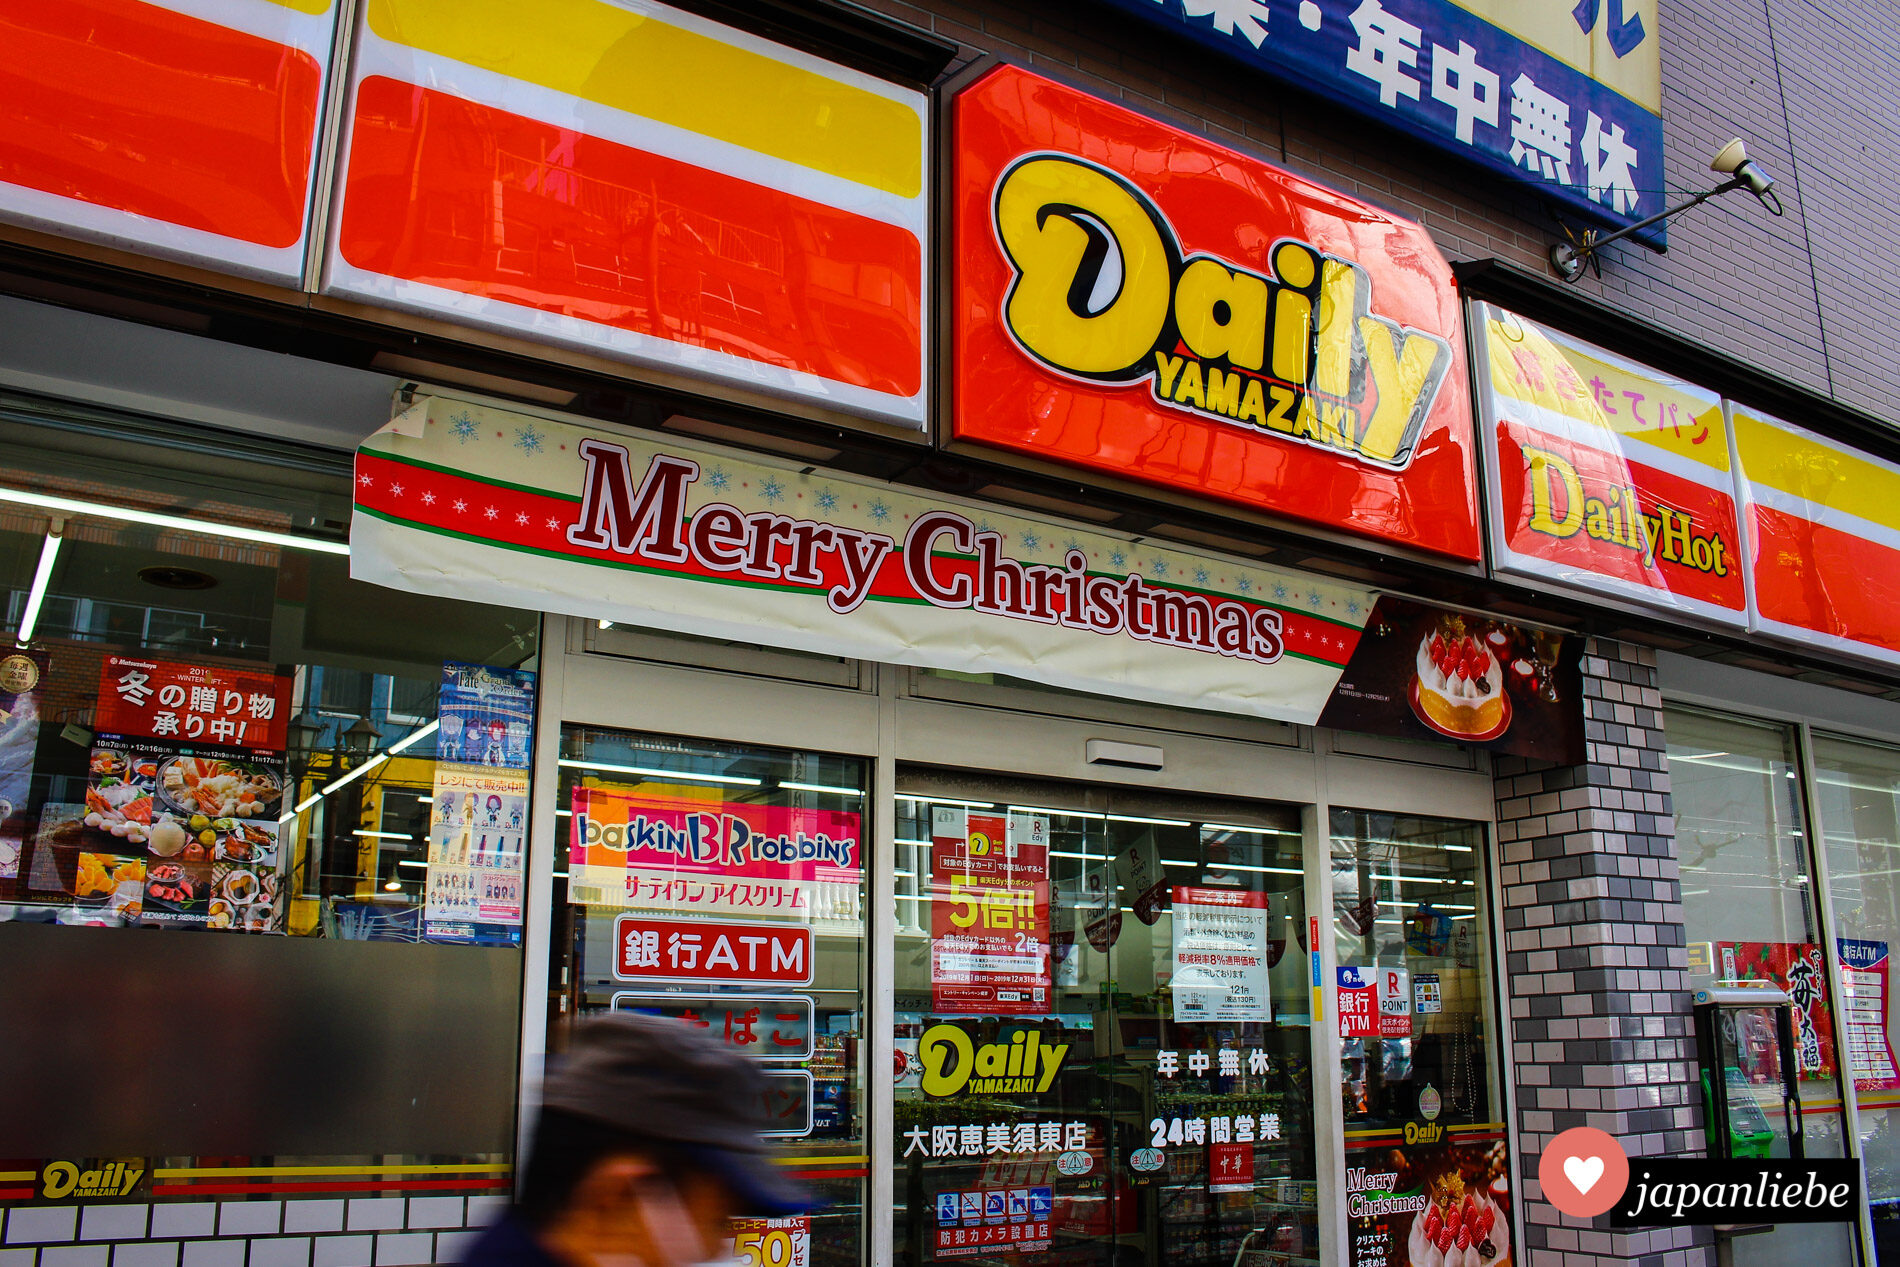 Ein Convenience Store bewirbt seine Weihnachtstorten mit einem "Merry Christmas"-Banner.